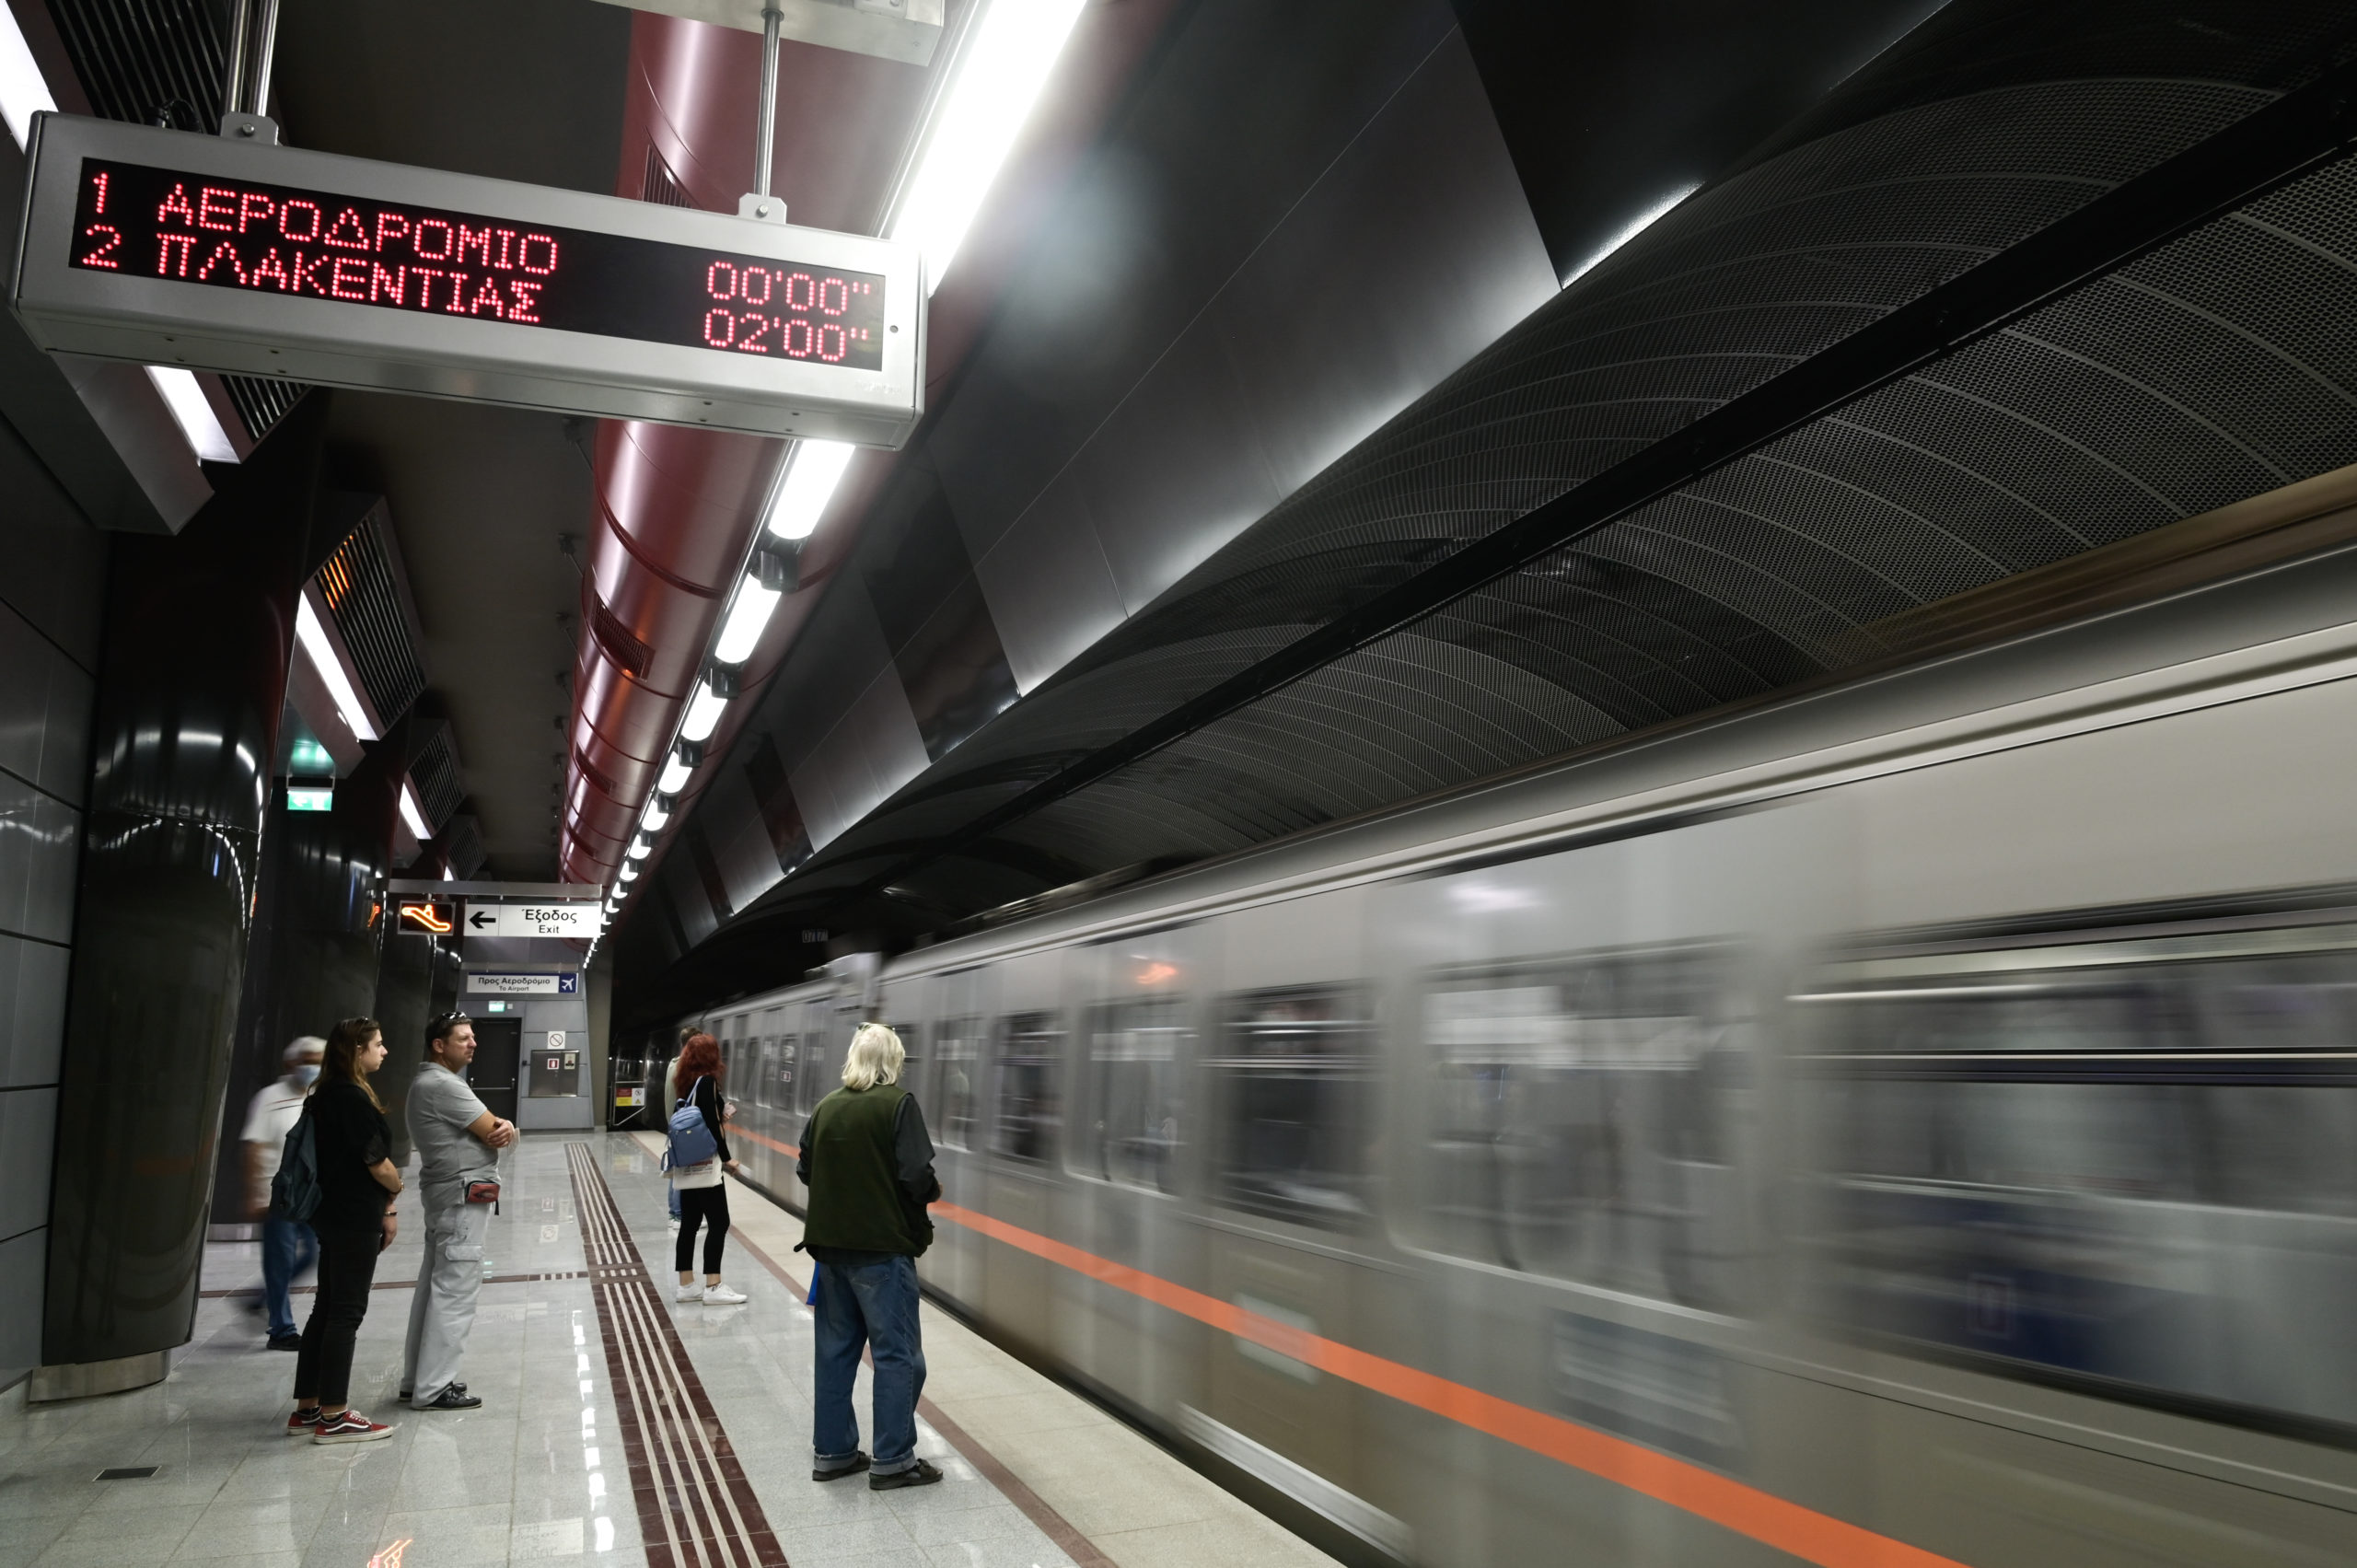 Επίσκεψη Σολτς στην Ελλάδα: Τροποποιήσεις στα δρομολόγια του Μετρό από και προς Αεροδρόμιο 26-27/10